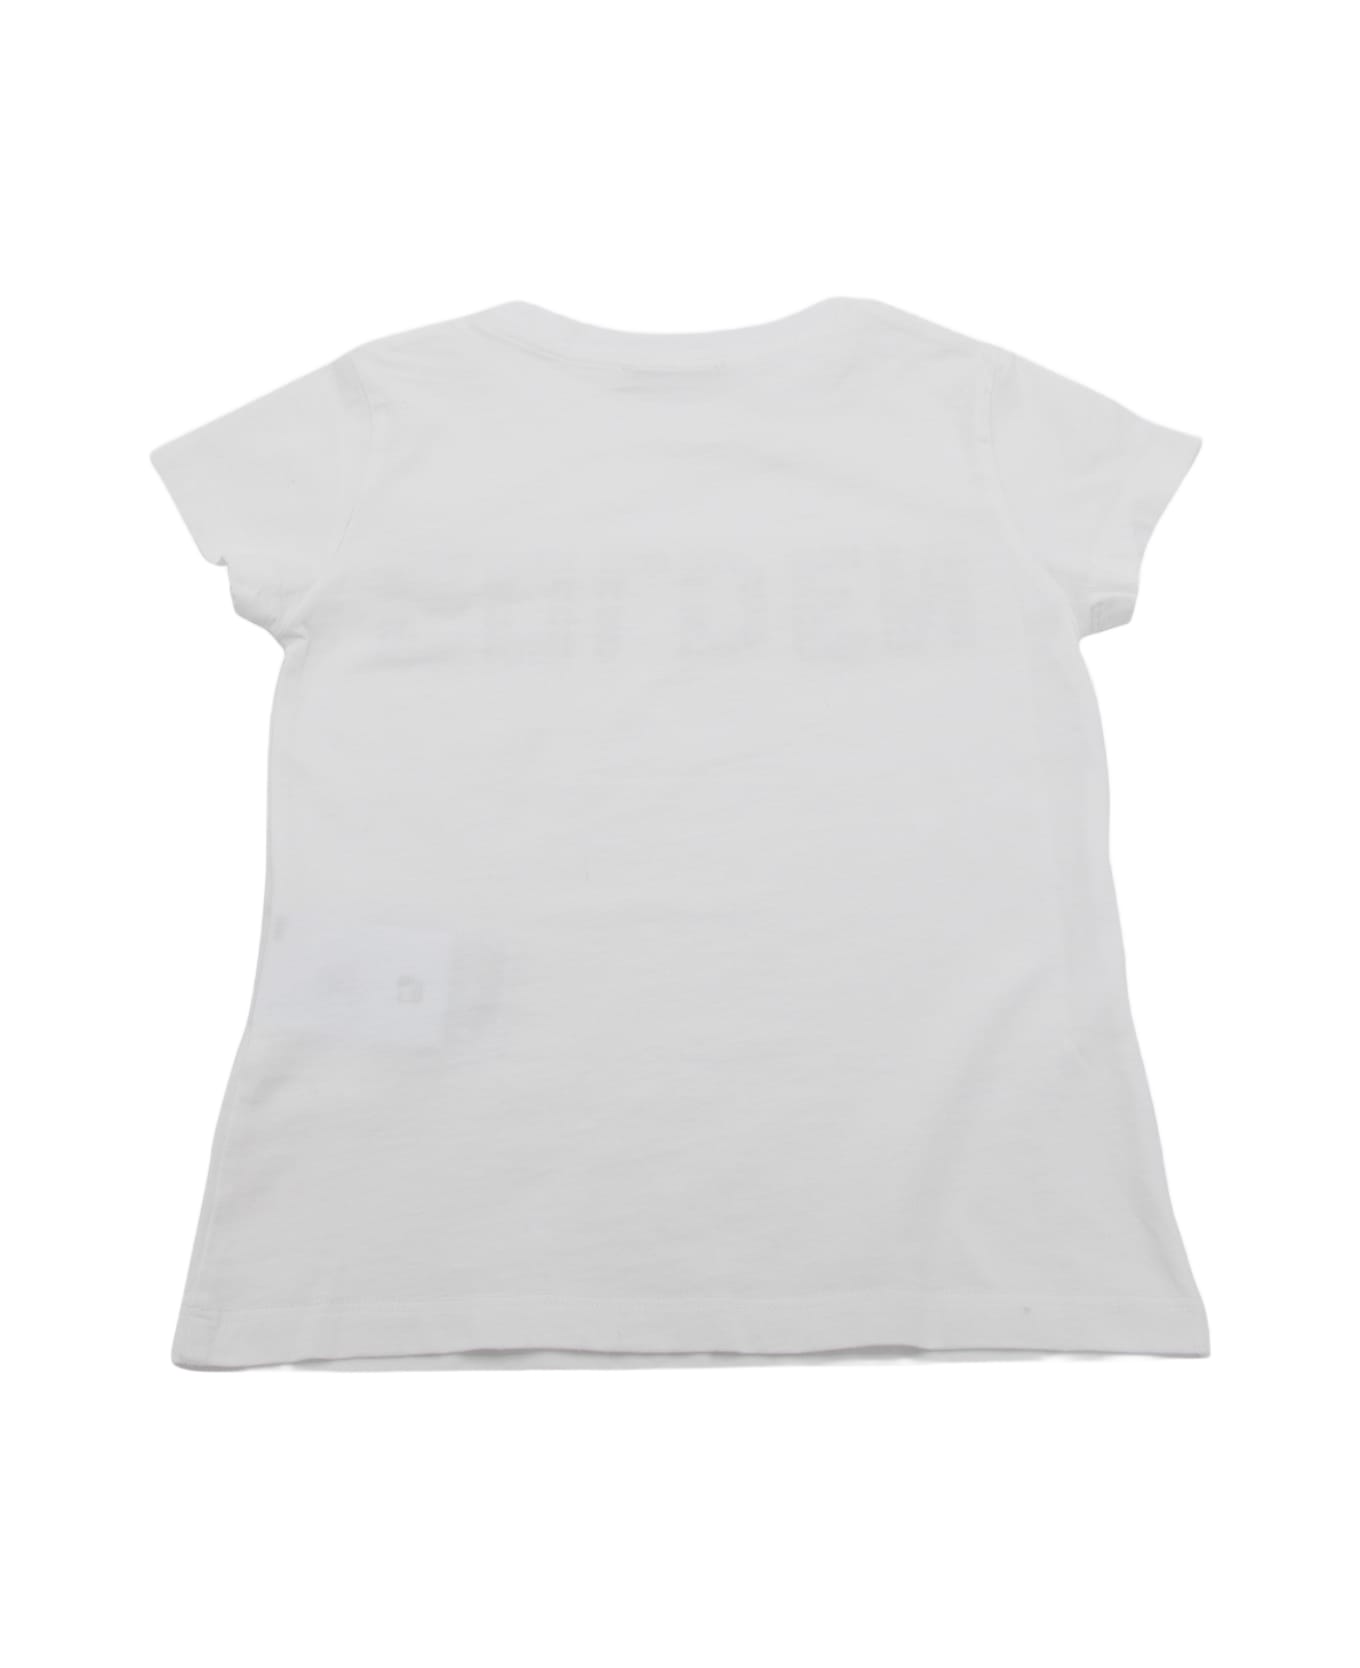 Golden Goose White Cotton Logo T-shirt - White